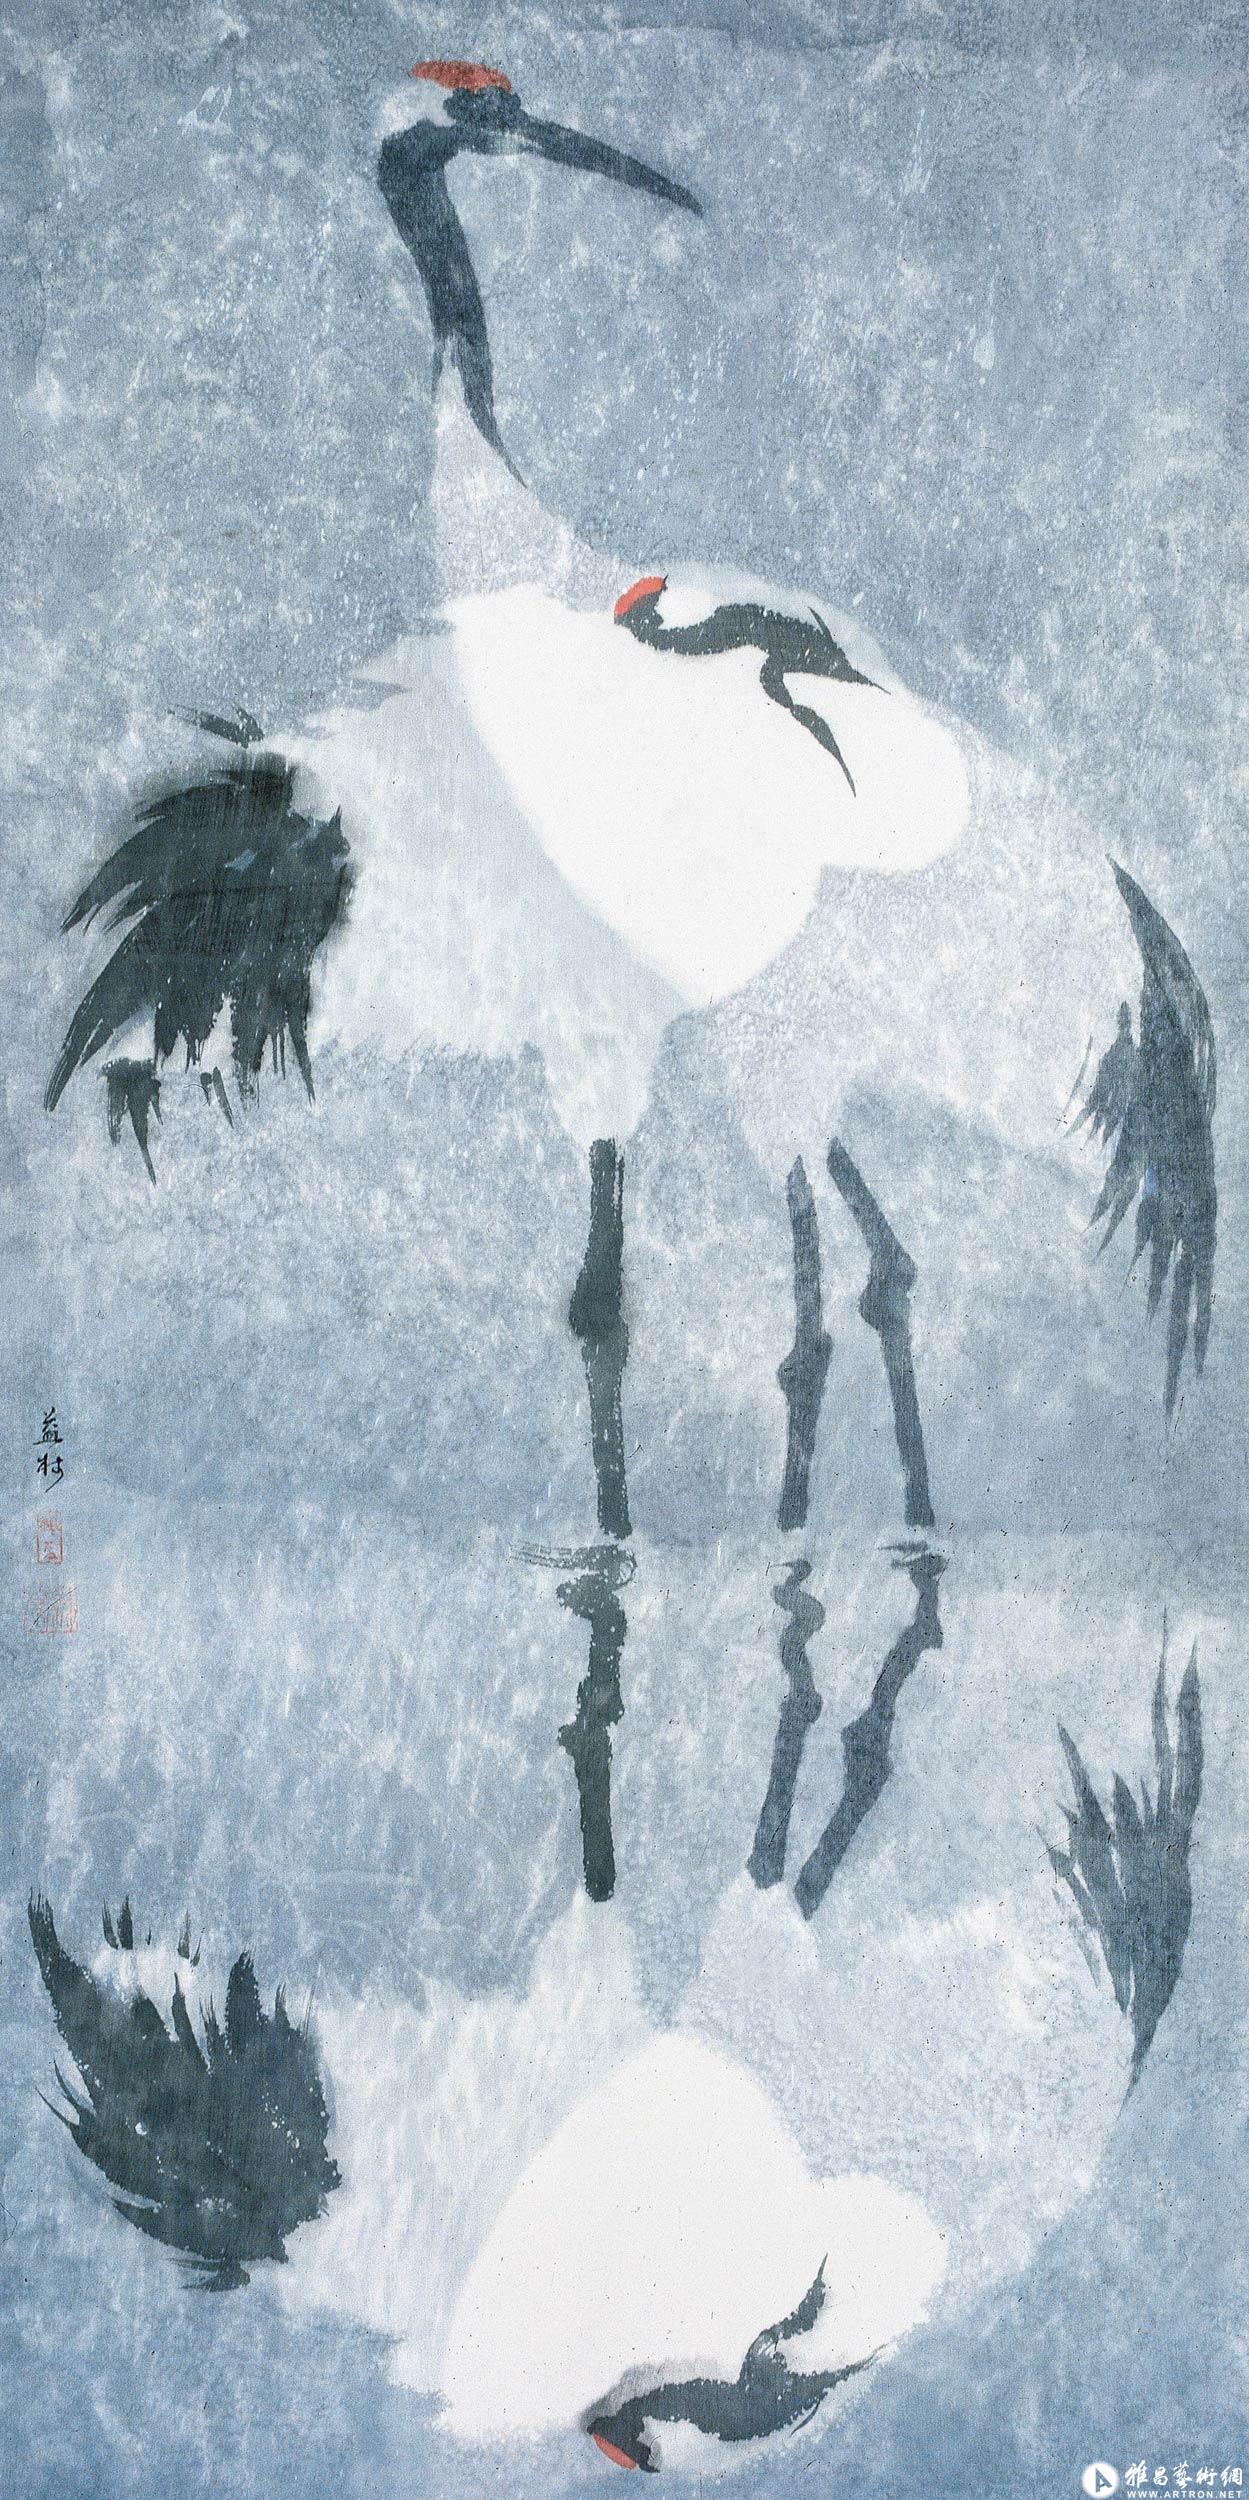 天涯客No.20 冬至^_^(The crane No.20 Winter Solstice)